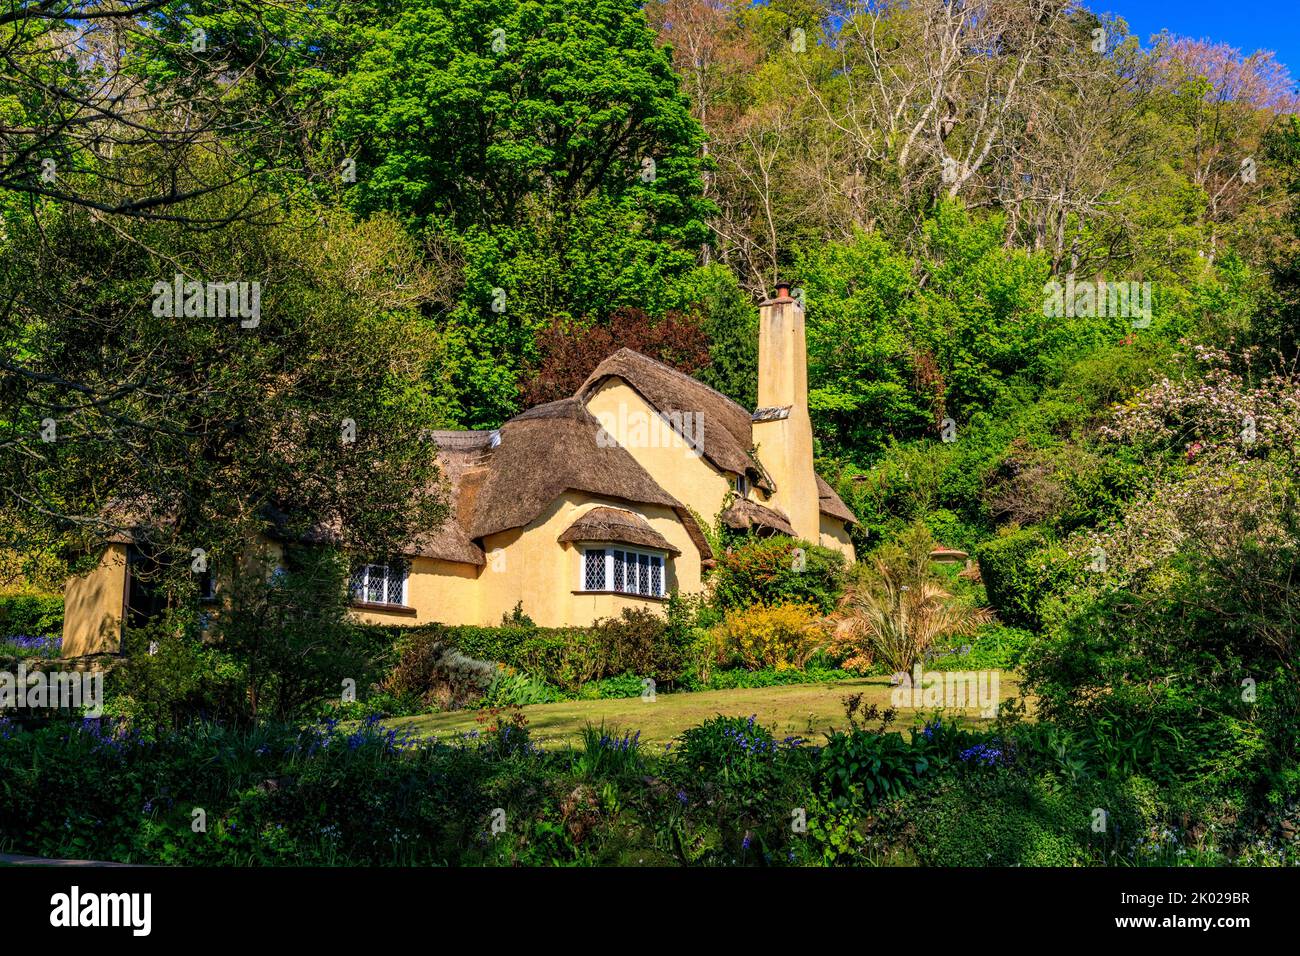 Postman's Cottage est un charmant cottage en chaume à Selworthy Green sur le domaine Holnicote, Somerset, Angleterre, Royaume-Uni Banque D'Images